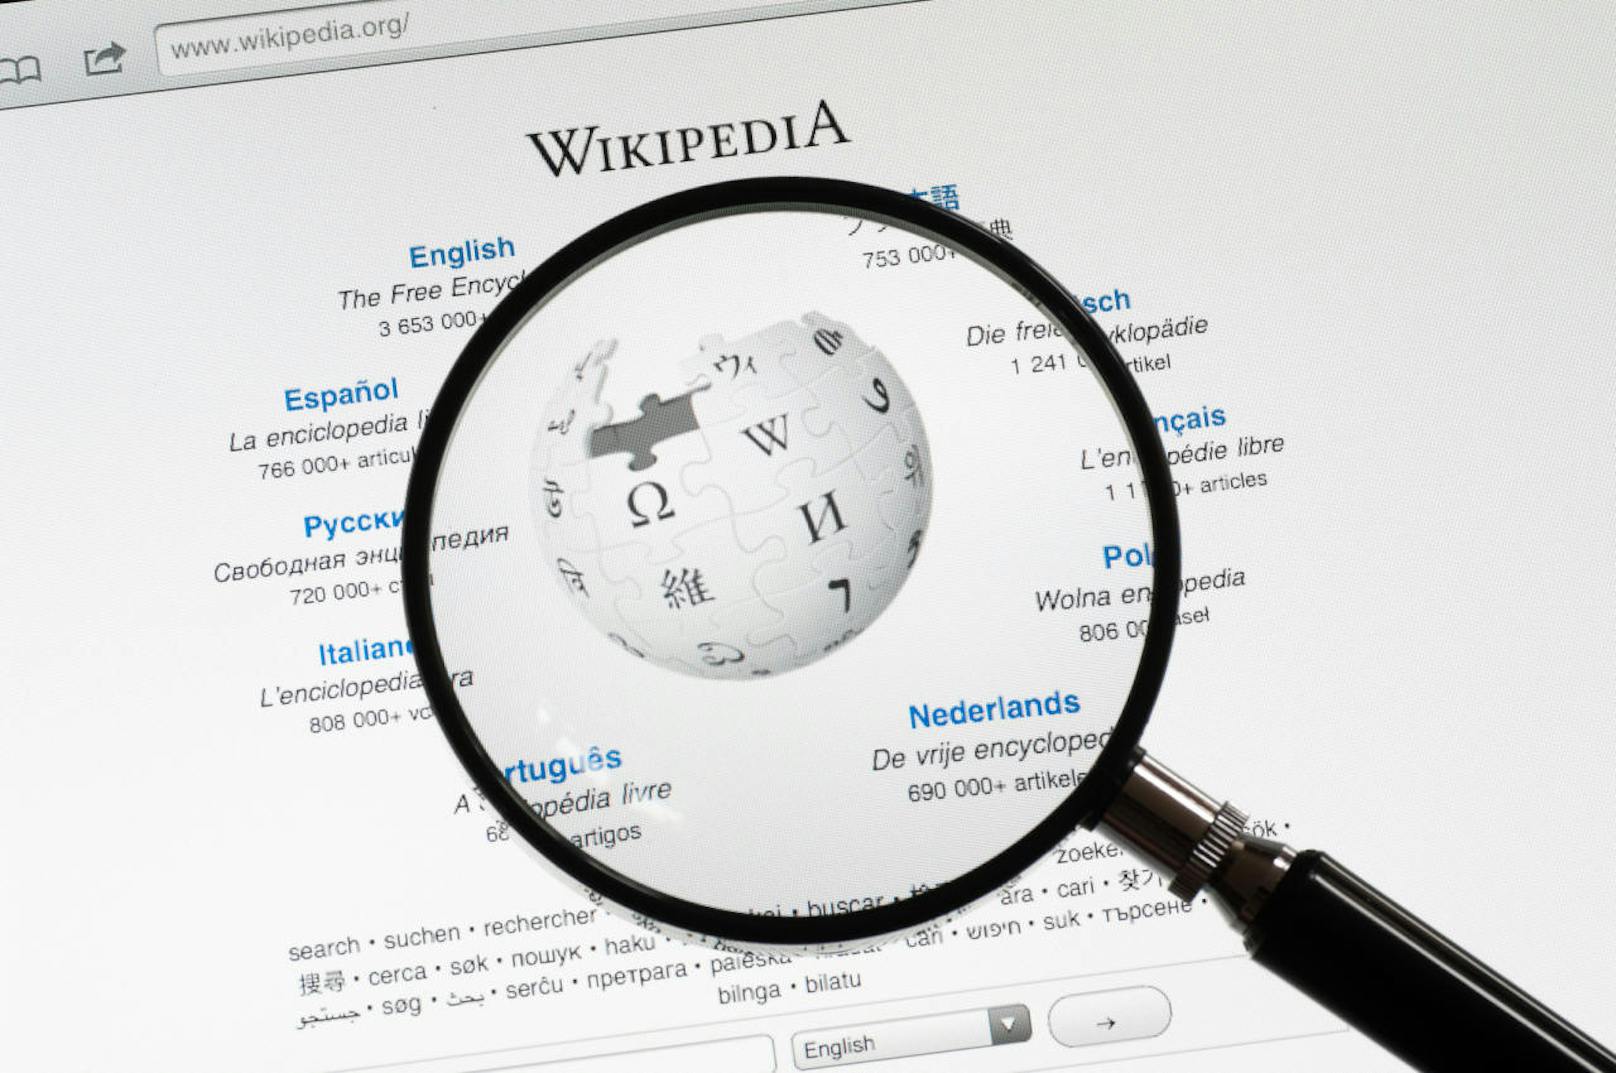 Dafür will Wikipedia jetzt plötzlich Geld verlangen